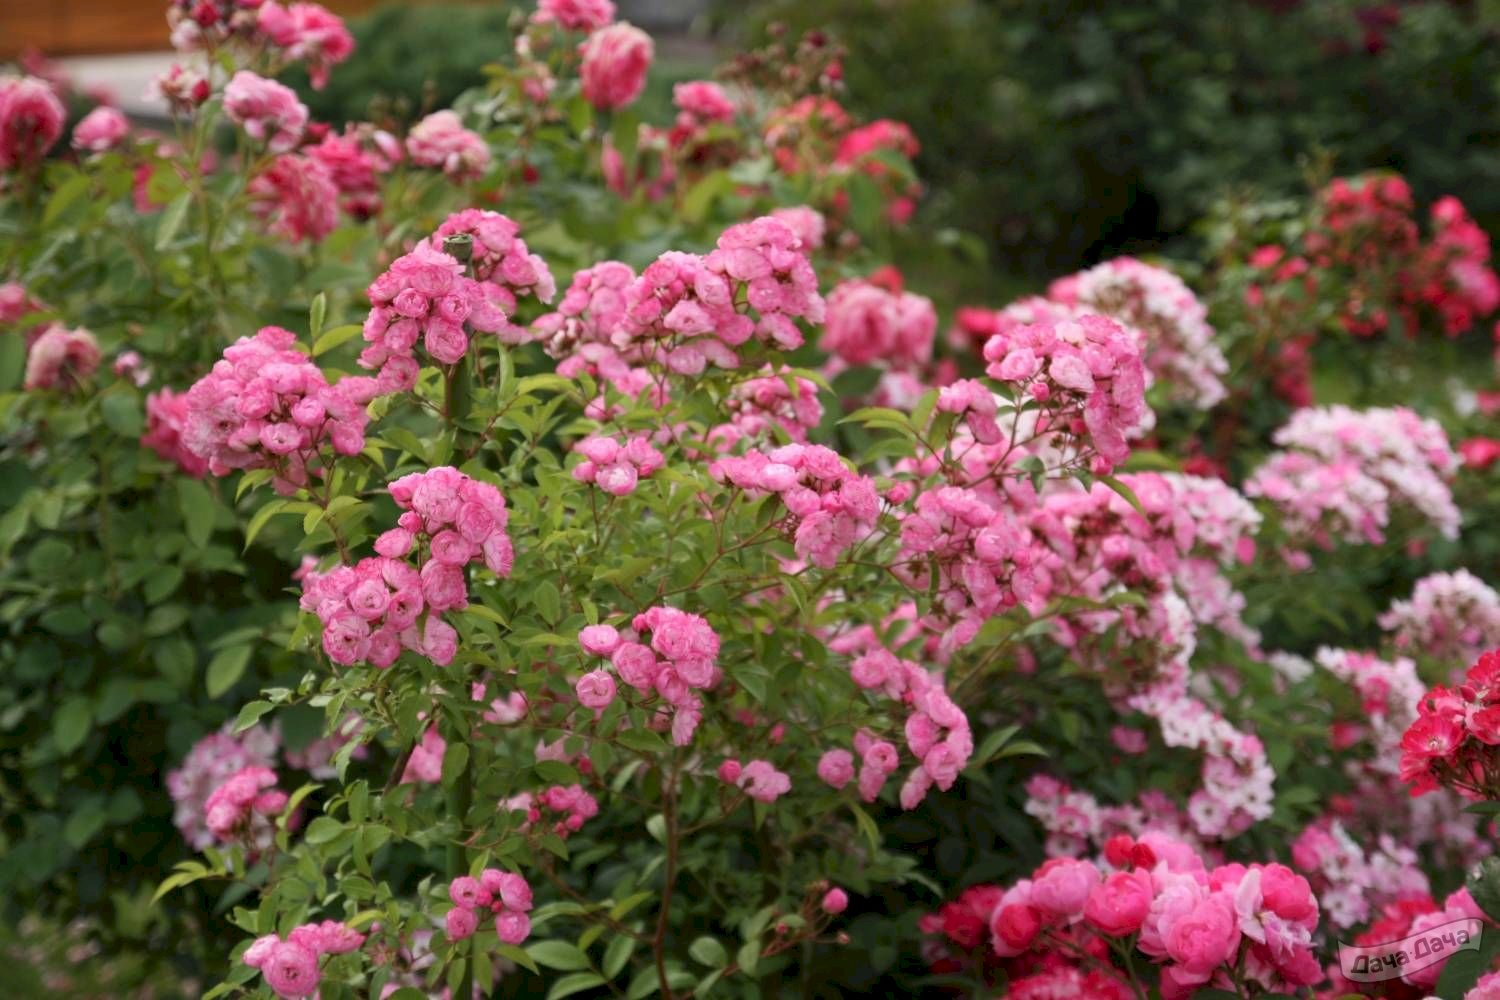 Роза гибридная мускусная Хэвенли Пинк (Heavenly Pink) (Rosa hibrida moschata Heavenly Pink) - описание сорта, фото, саженцы, посадка, особенности ухода. Дачная энциклопедия.